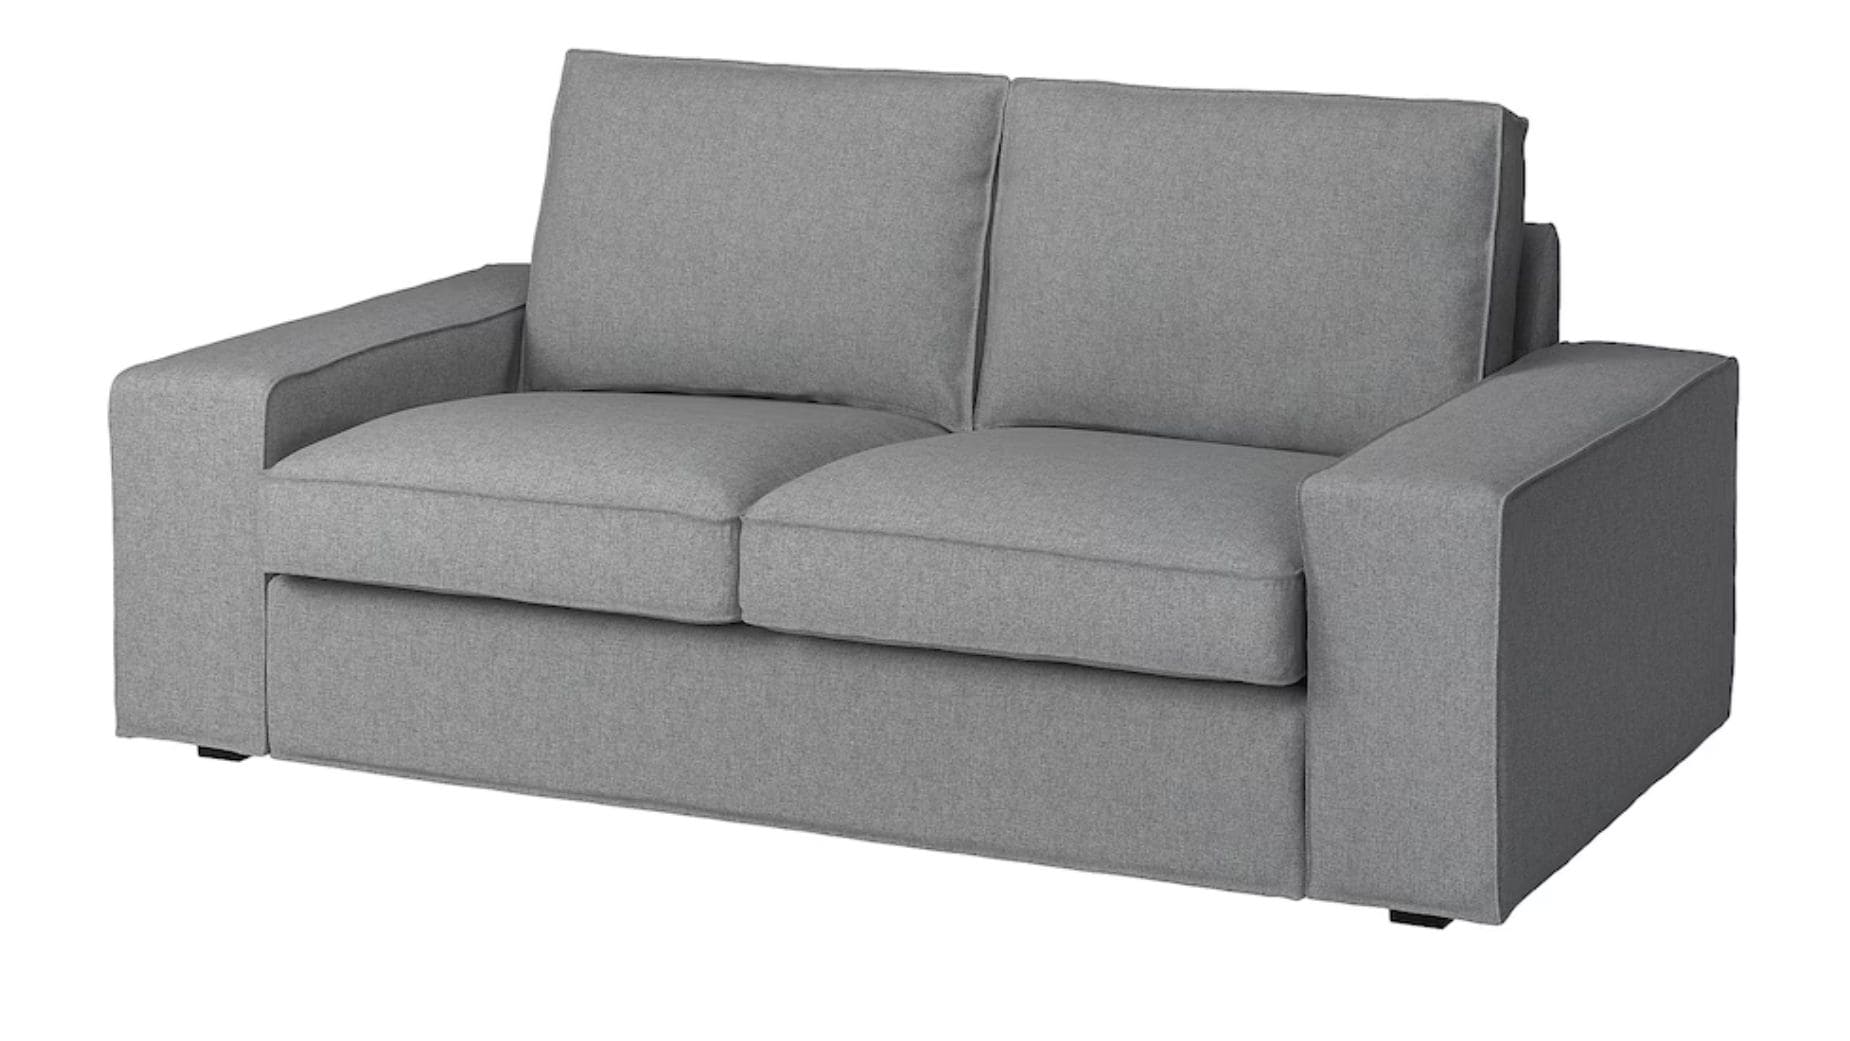 Sofa KIVIK 3 plazas de IKEA rebajado en web